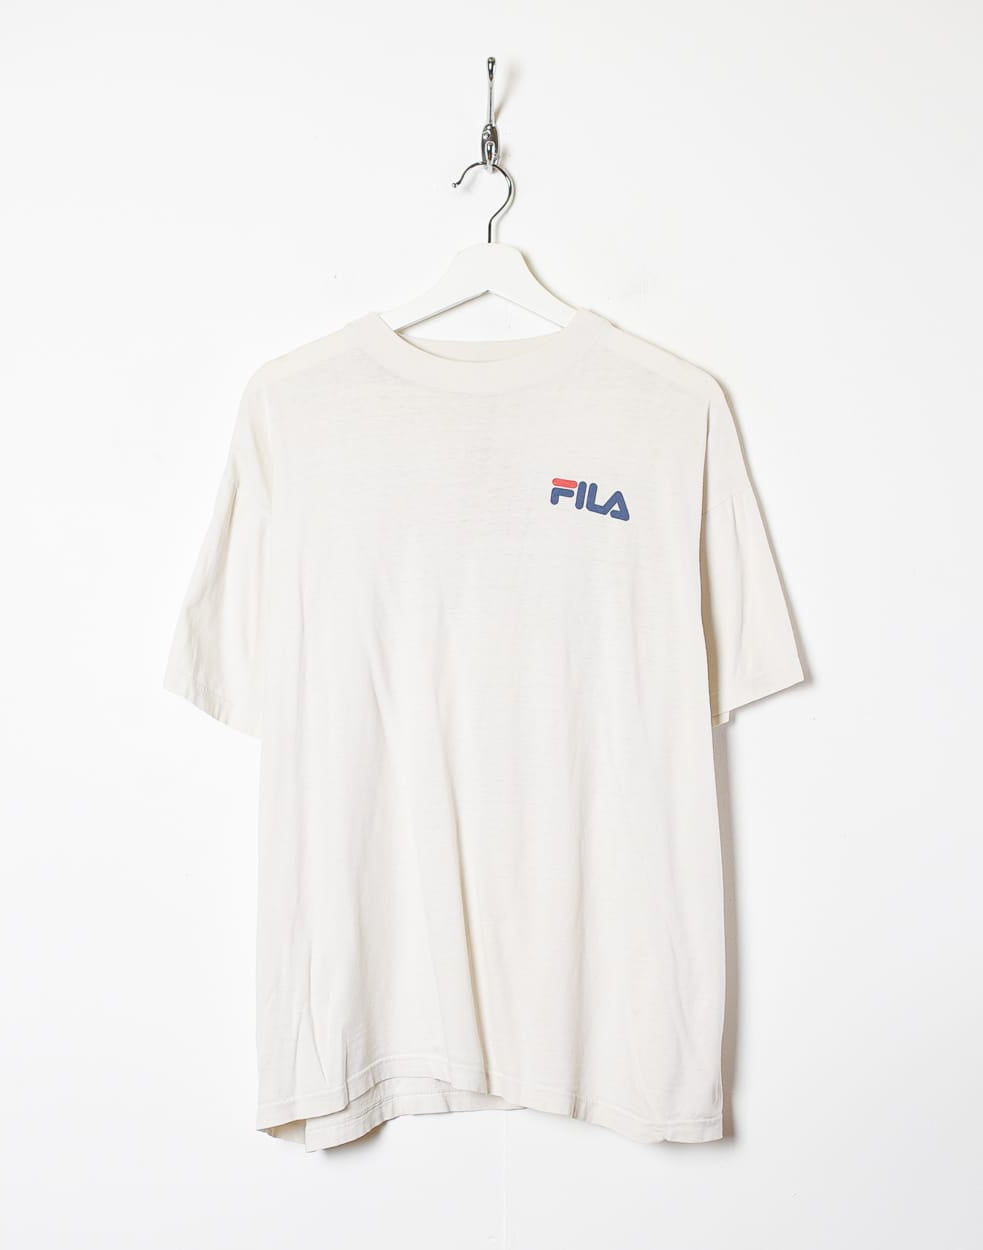 White Fila T-Shirt - Large